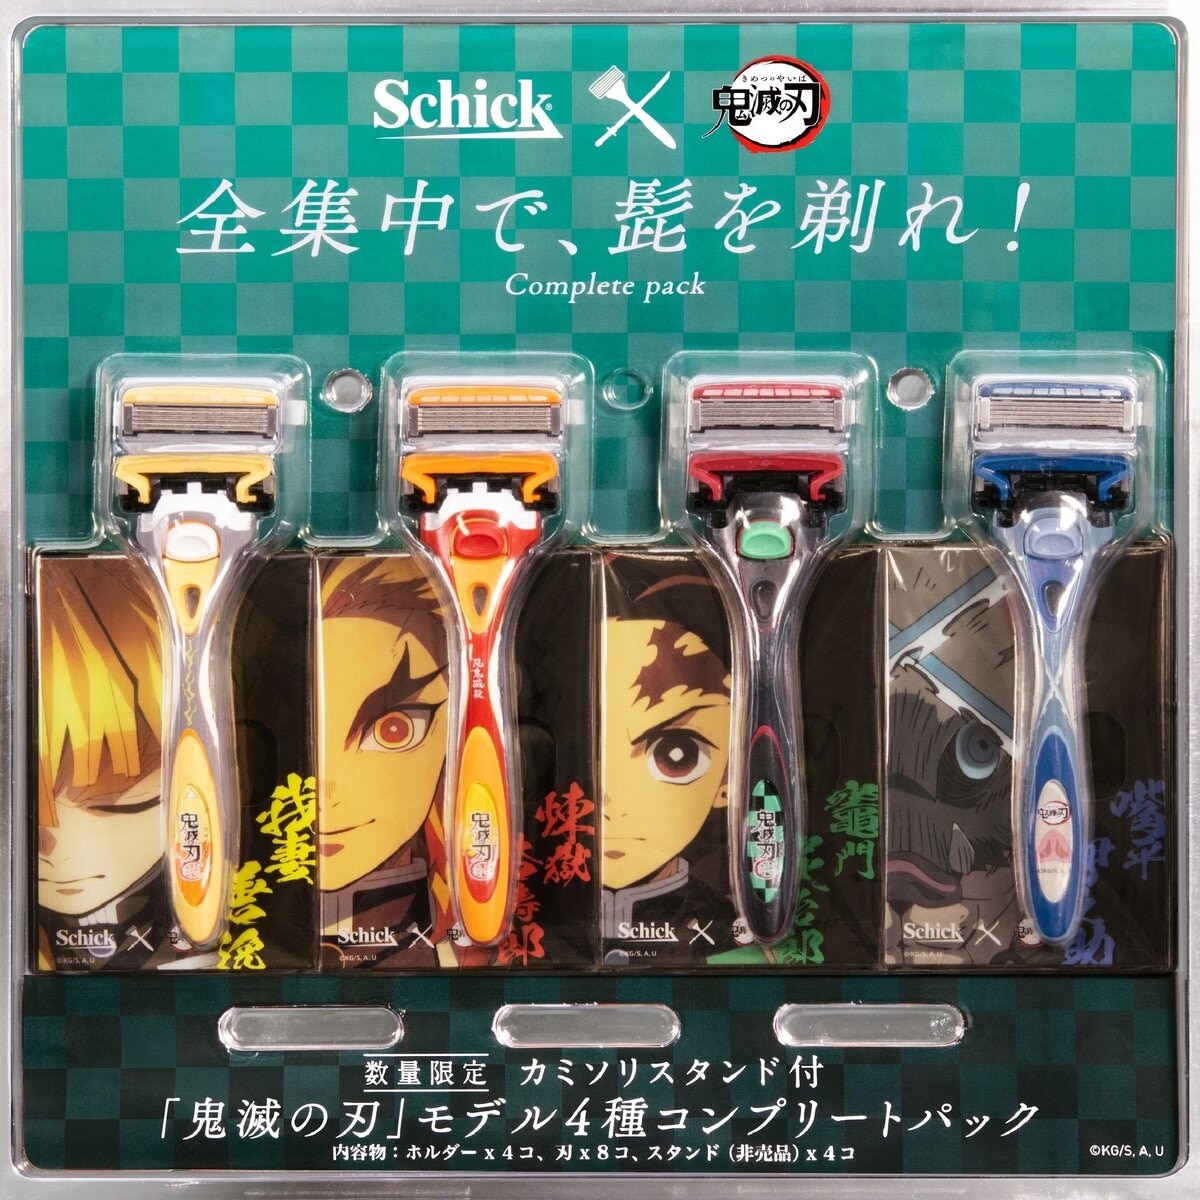 Schick(シック) 鬼滅の刃 ハイドロ5 プレミアムホルダー4種コンプリートパック | Costco Japan